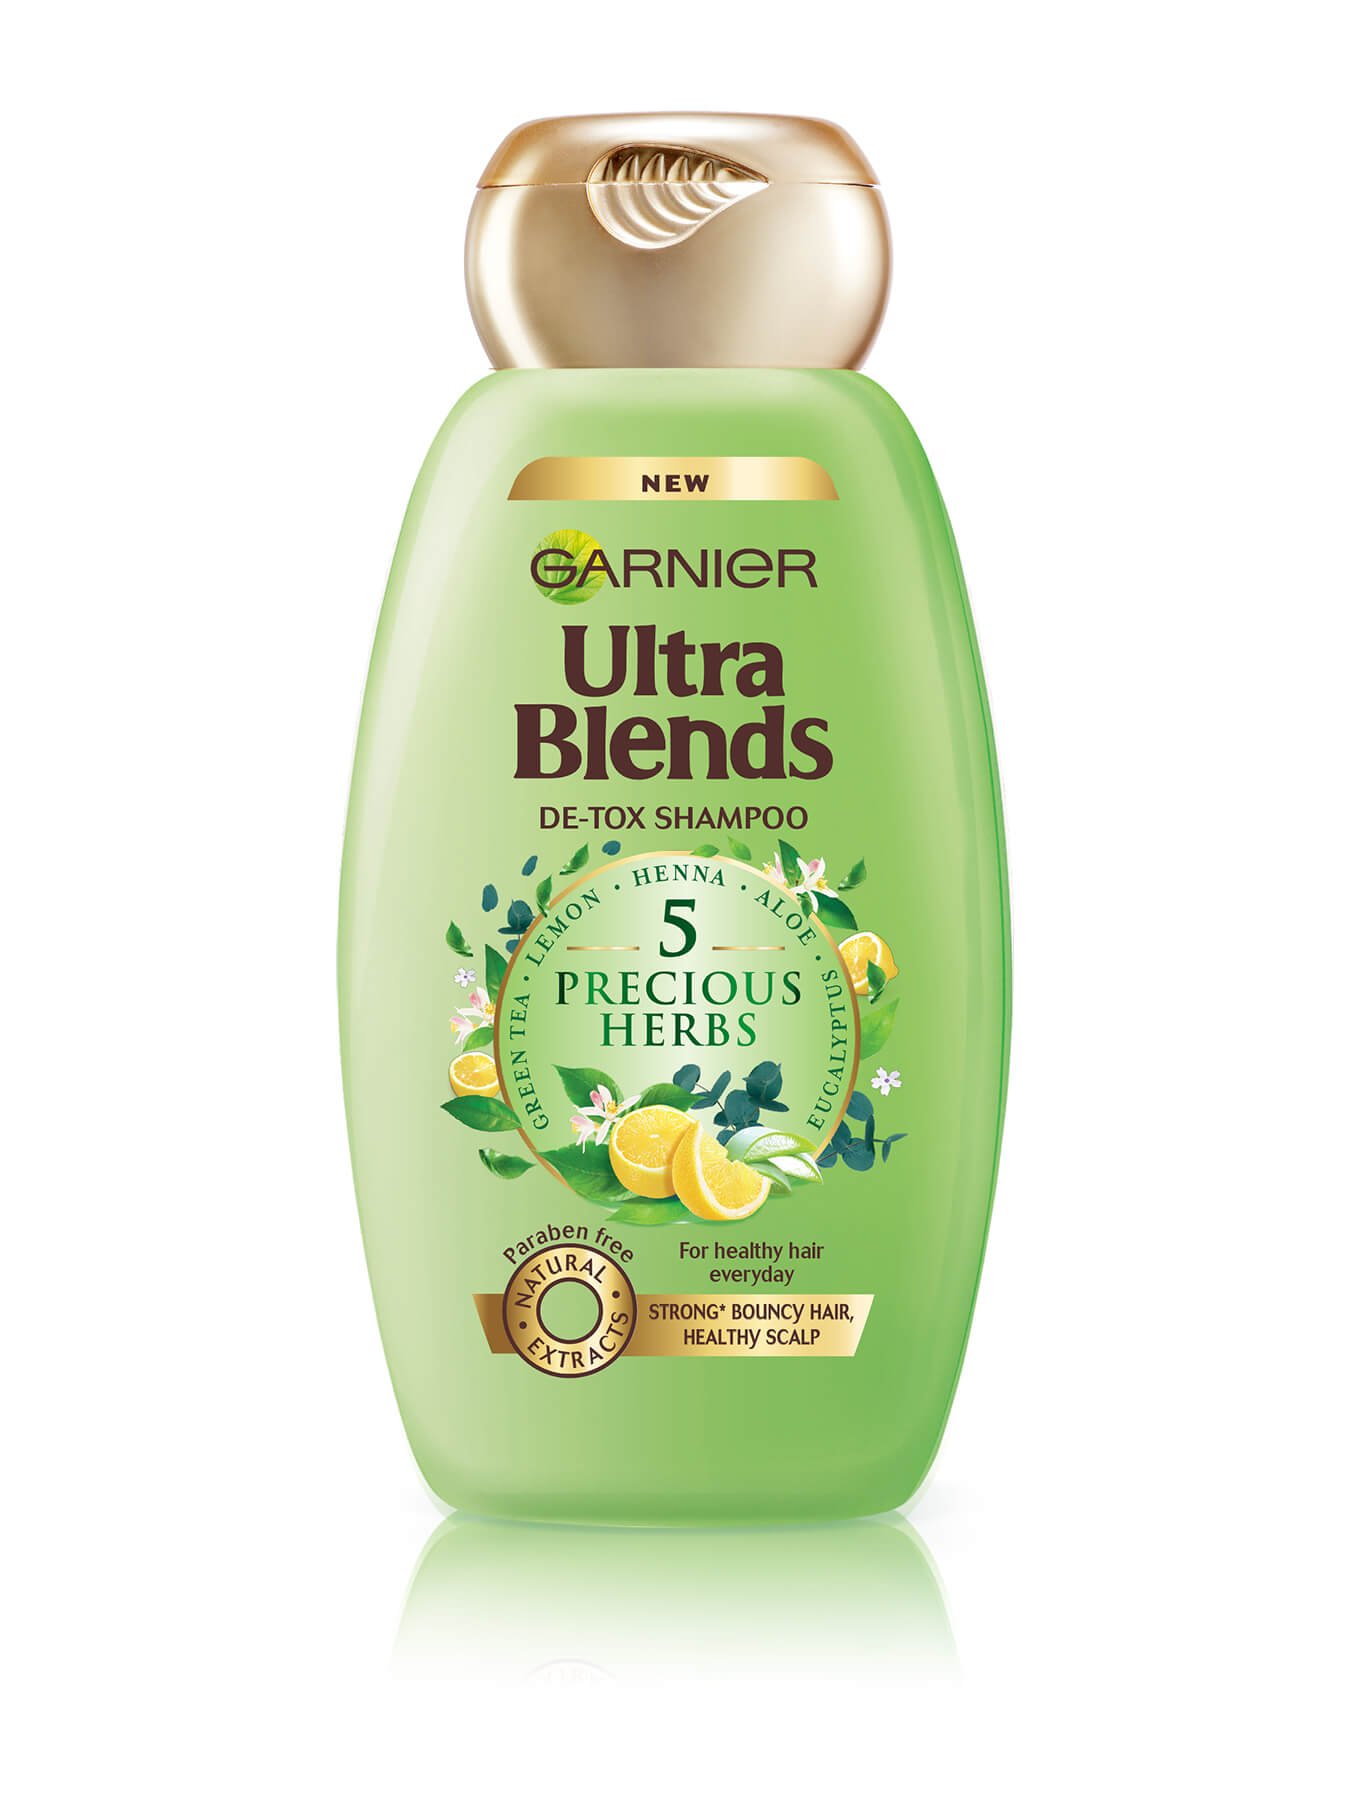 Garnier Ultra Blends 5 Precious herbs 175ml Shampoo